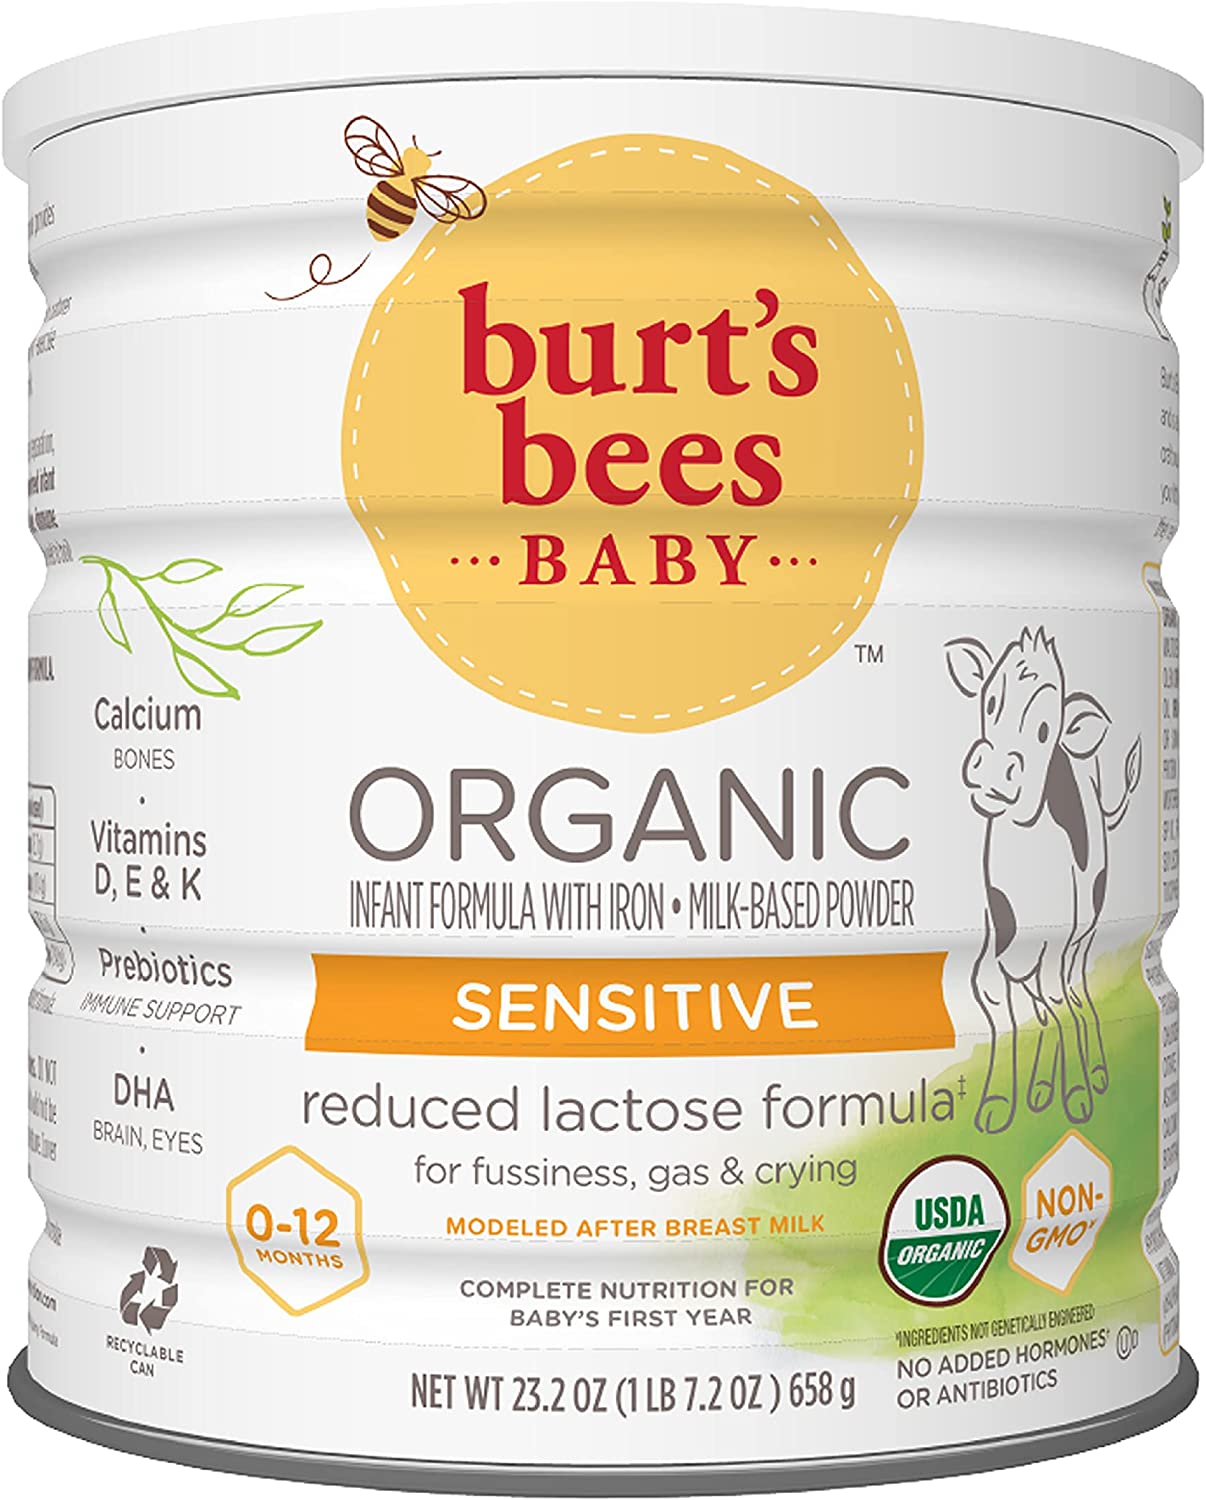 Organic Infant Formula